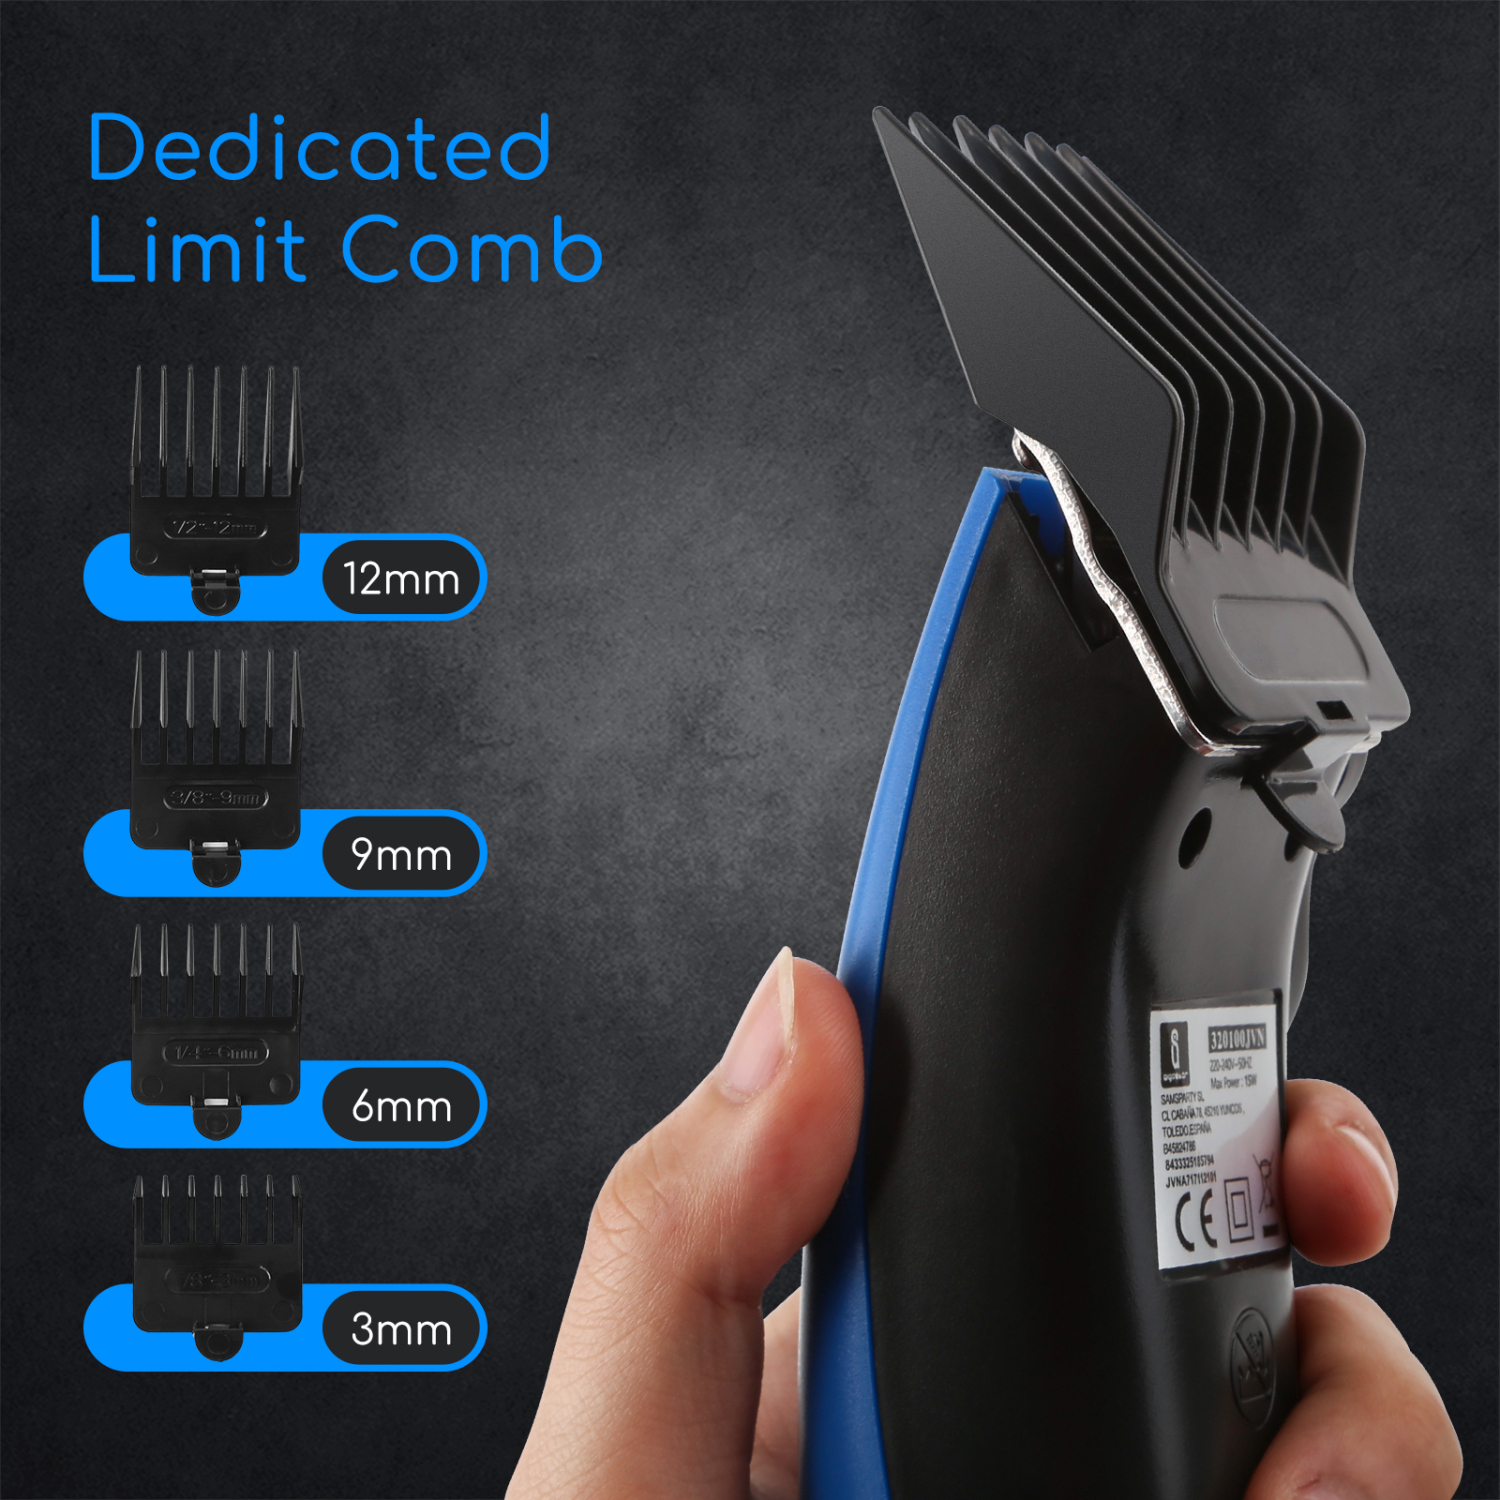 Aigostar Blueflash 32JVN - Maquinilla para cortar el pelo, incluye 4 peines guía y kit completo de mantenimiento, 15 W de potencia y 3 ajustes, cable extralargo. Color azul. Diseño exclusivo.